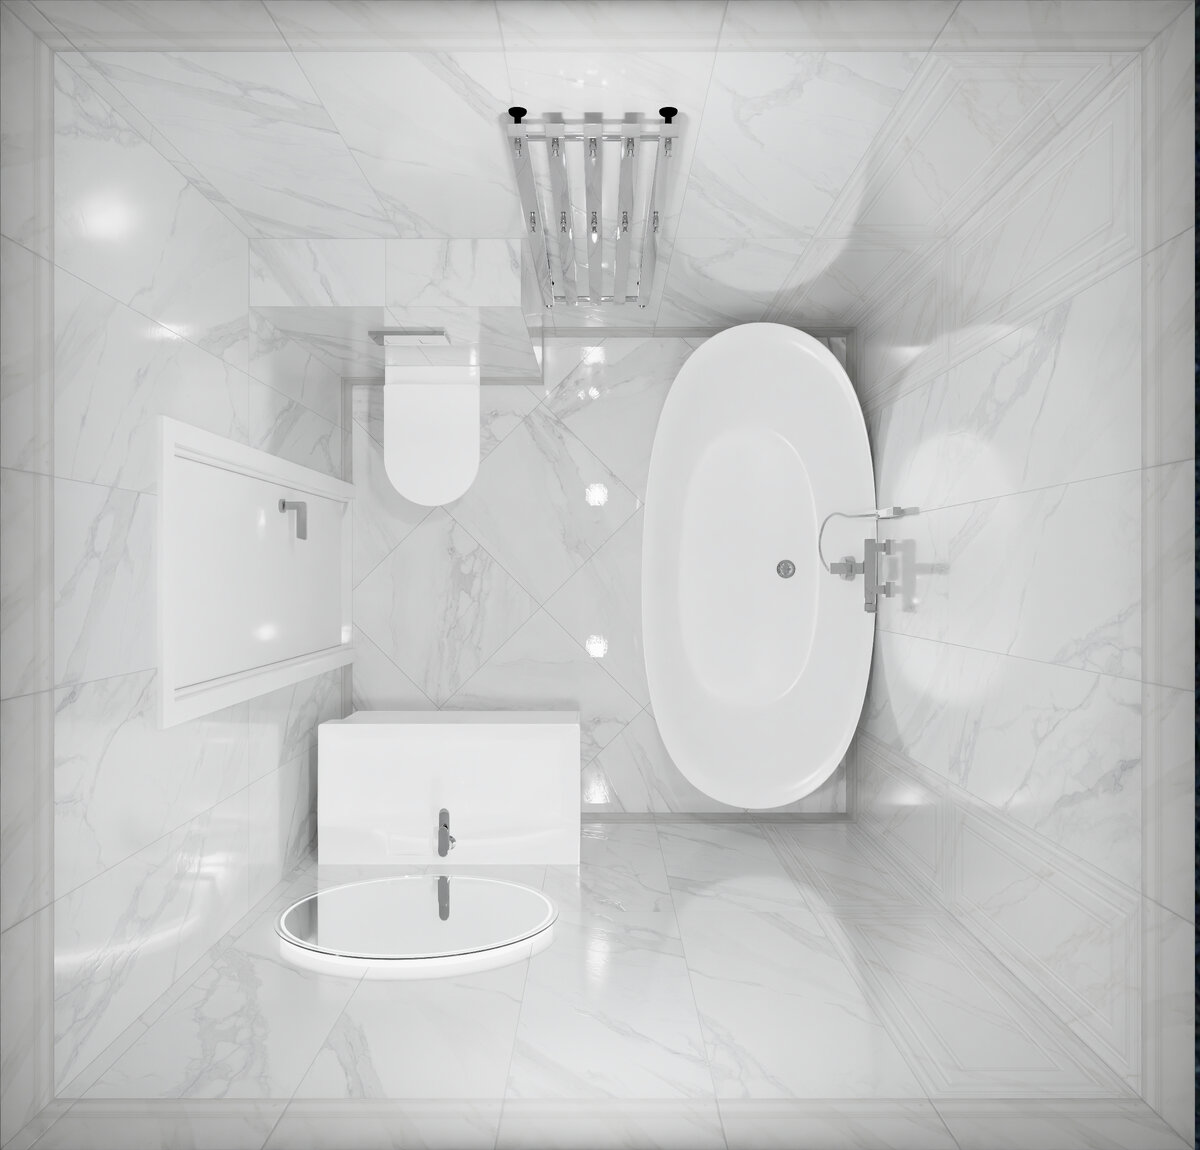 разработанный мною дизайн-проект ванной комнаты в коллекции Прадо